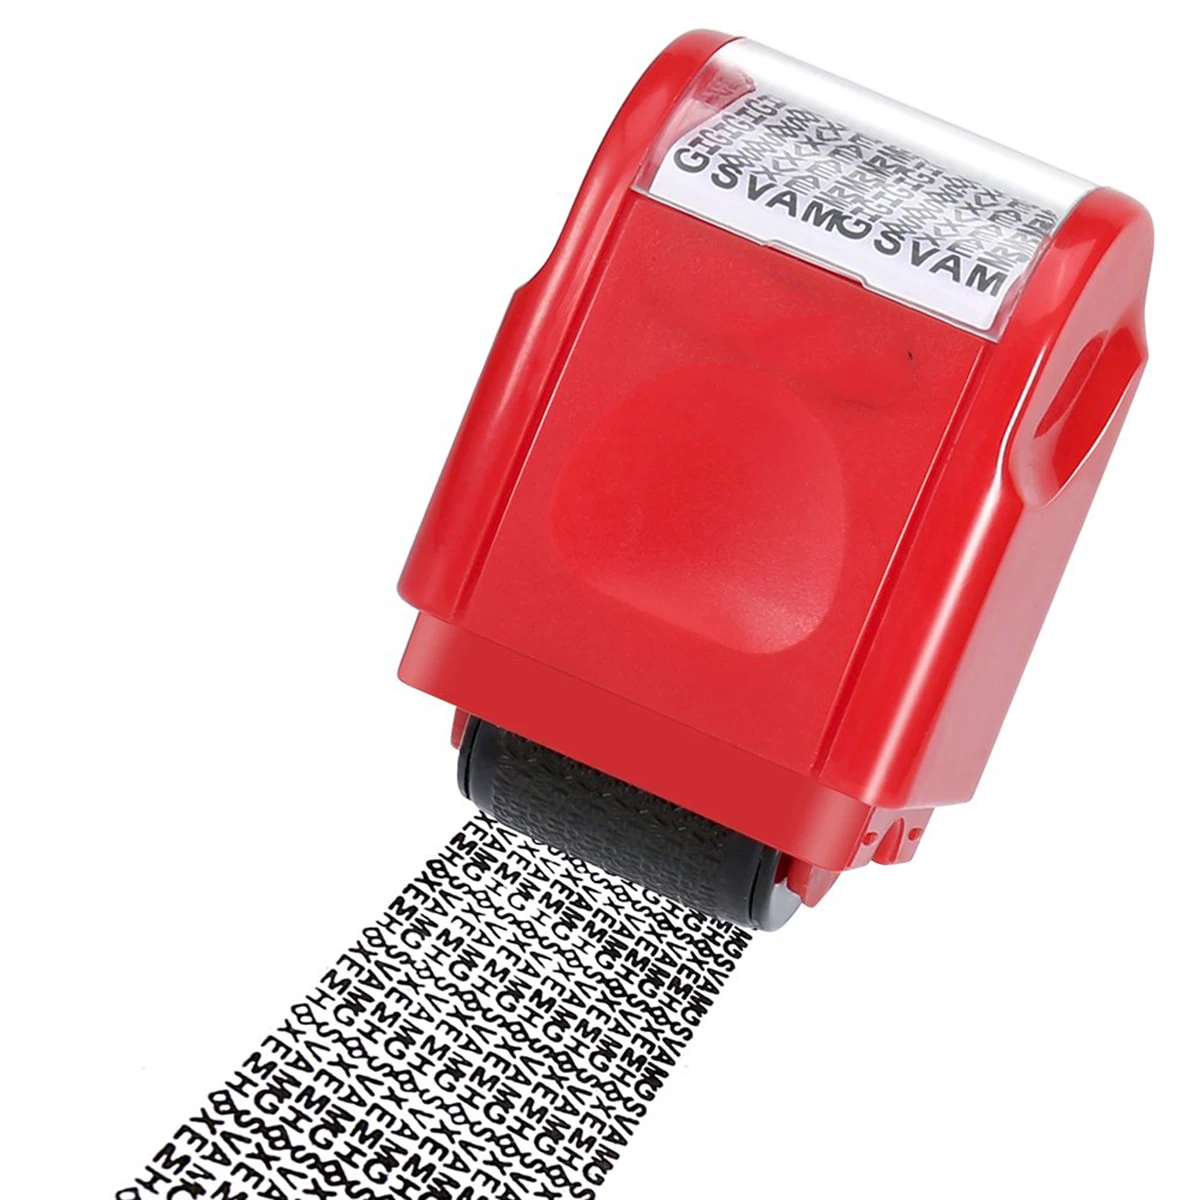 Креативный идентификационный валик для самостоятельной покраски штамп защита конфиденциальности информация покрытие защитник данных грязный код офисные канцелярские принадлежности